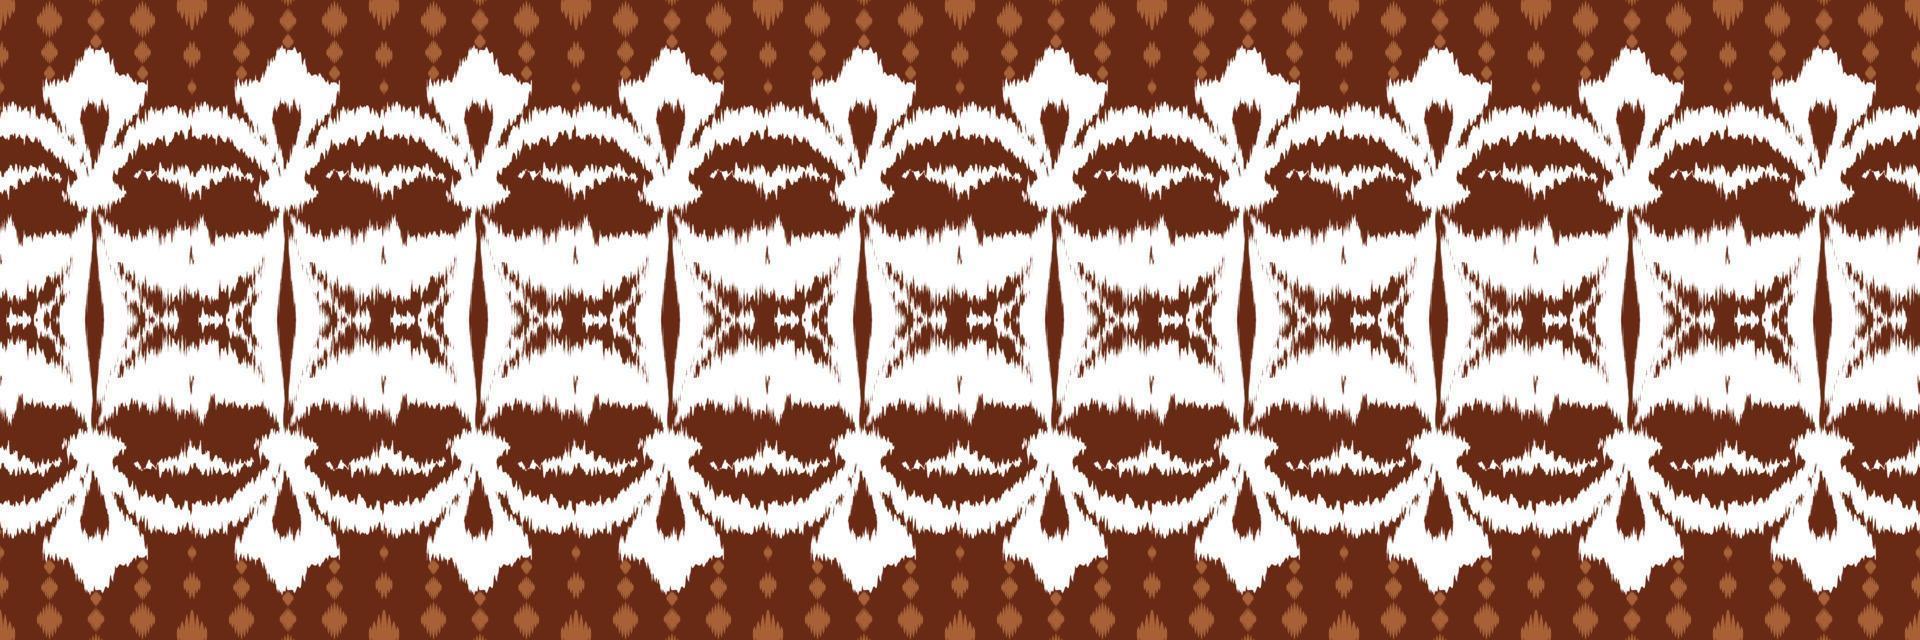 nahtloses muster der ikat-blumenstammeskunst. ethnische geometrische ikkat batik digitaler vektor textildesign für drucke stoff saree mughal pinsel symbol schwaden textur kurti kurtis kurtas